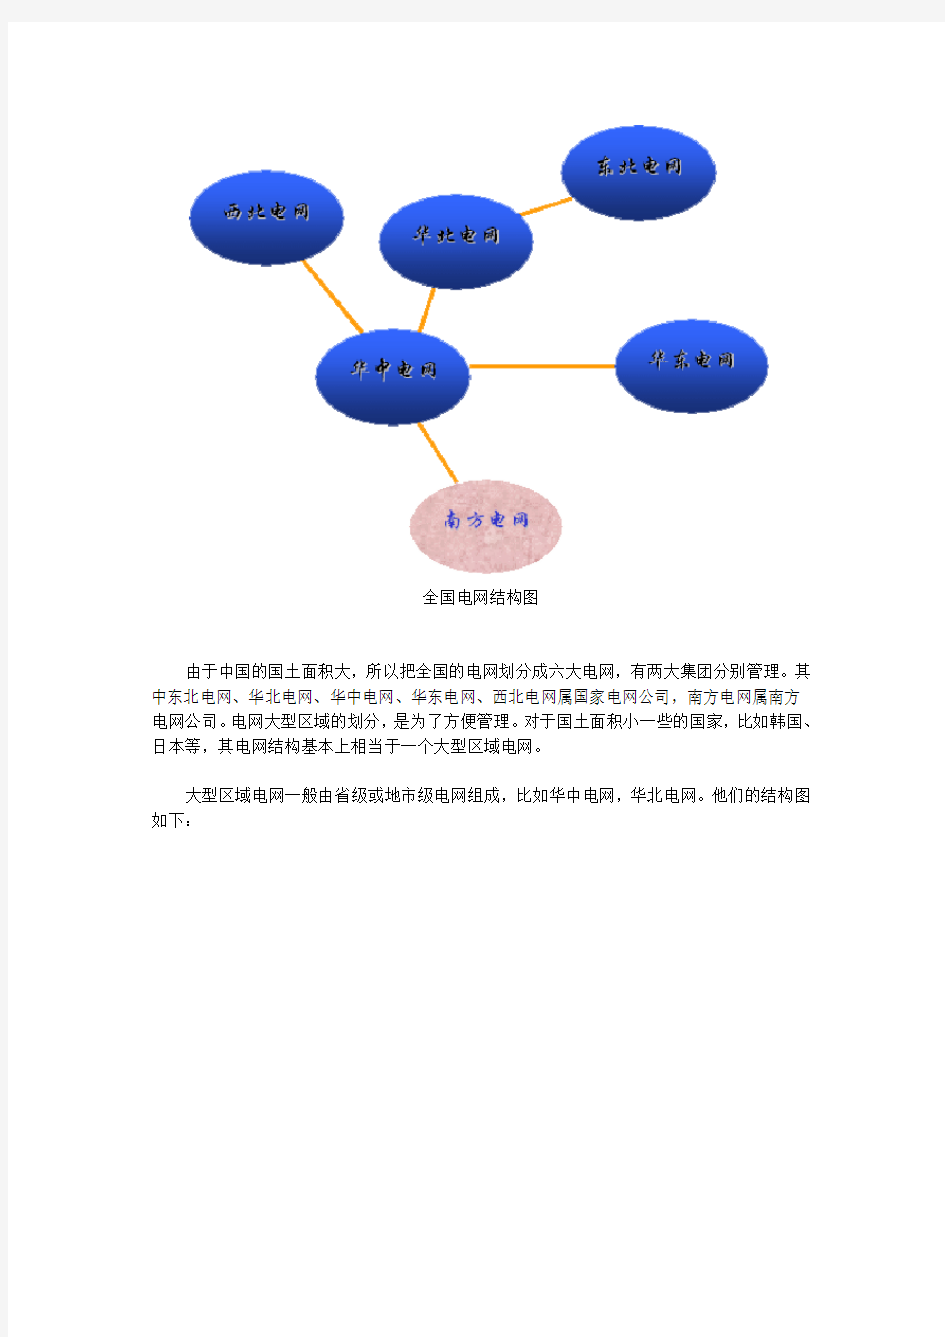 中国电网结构及概况